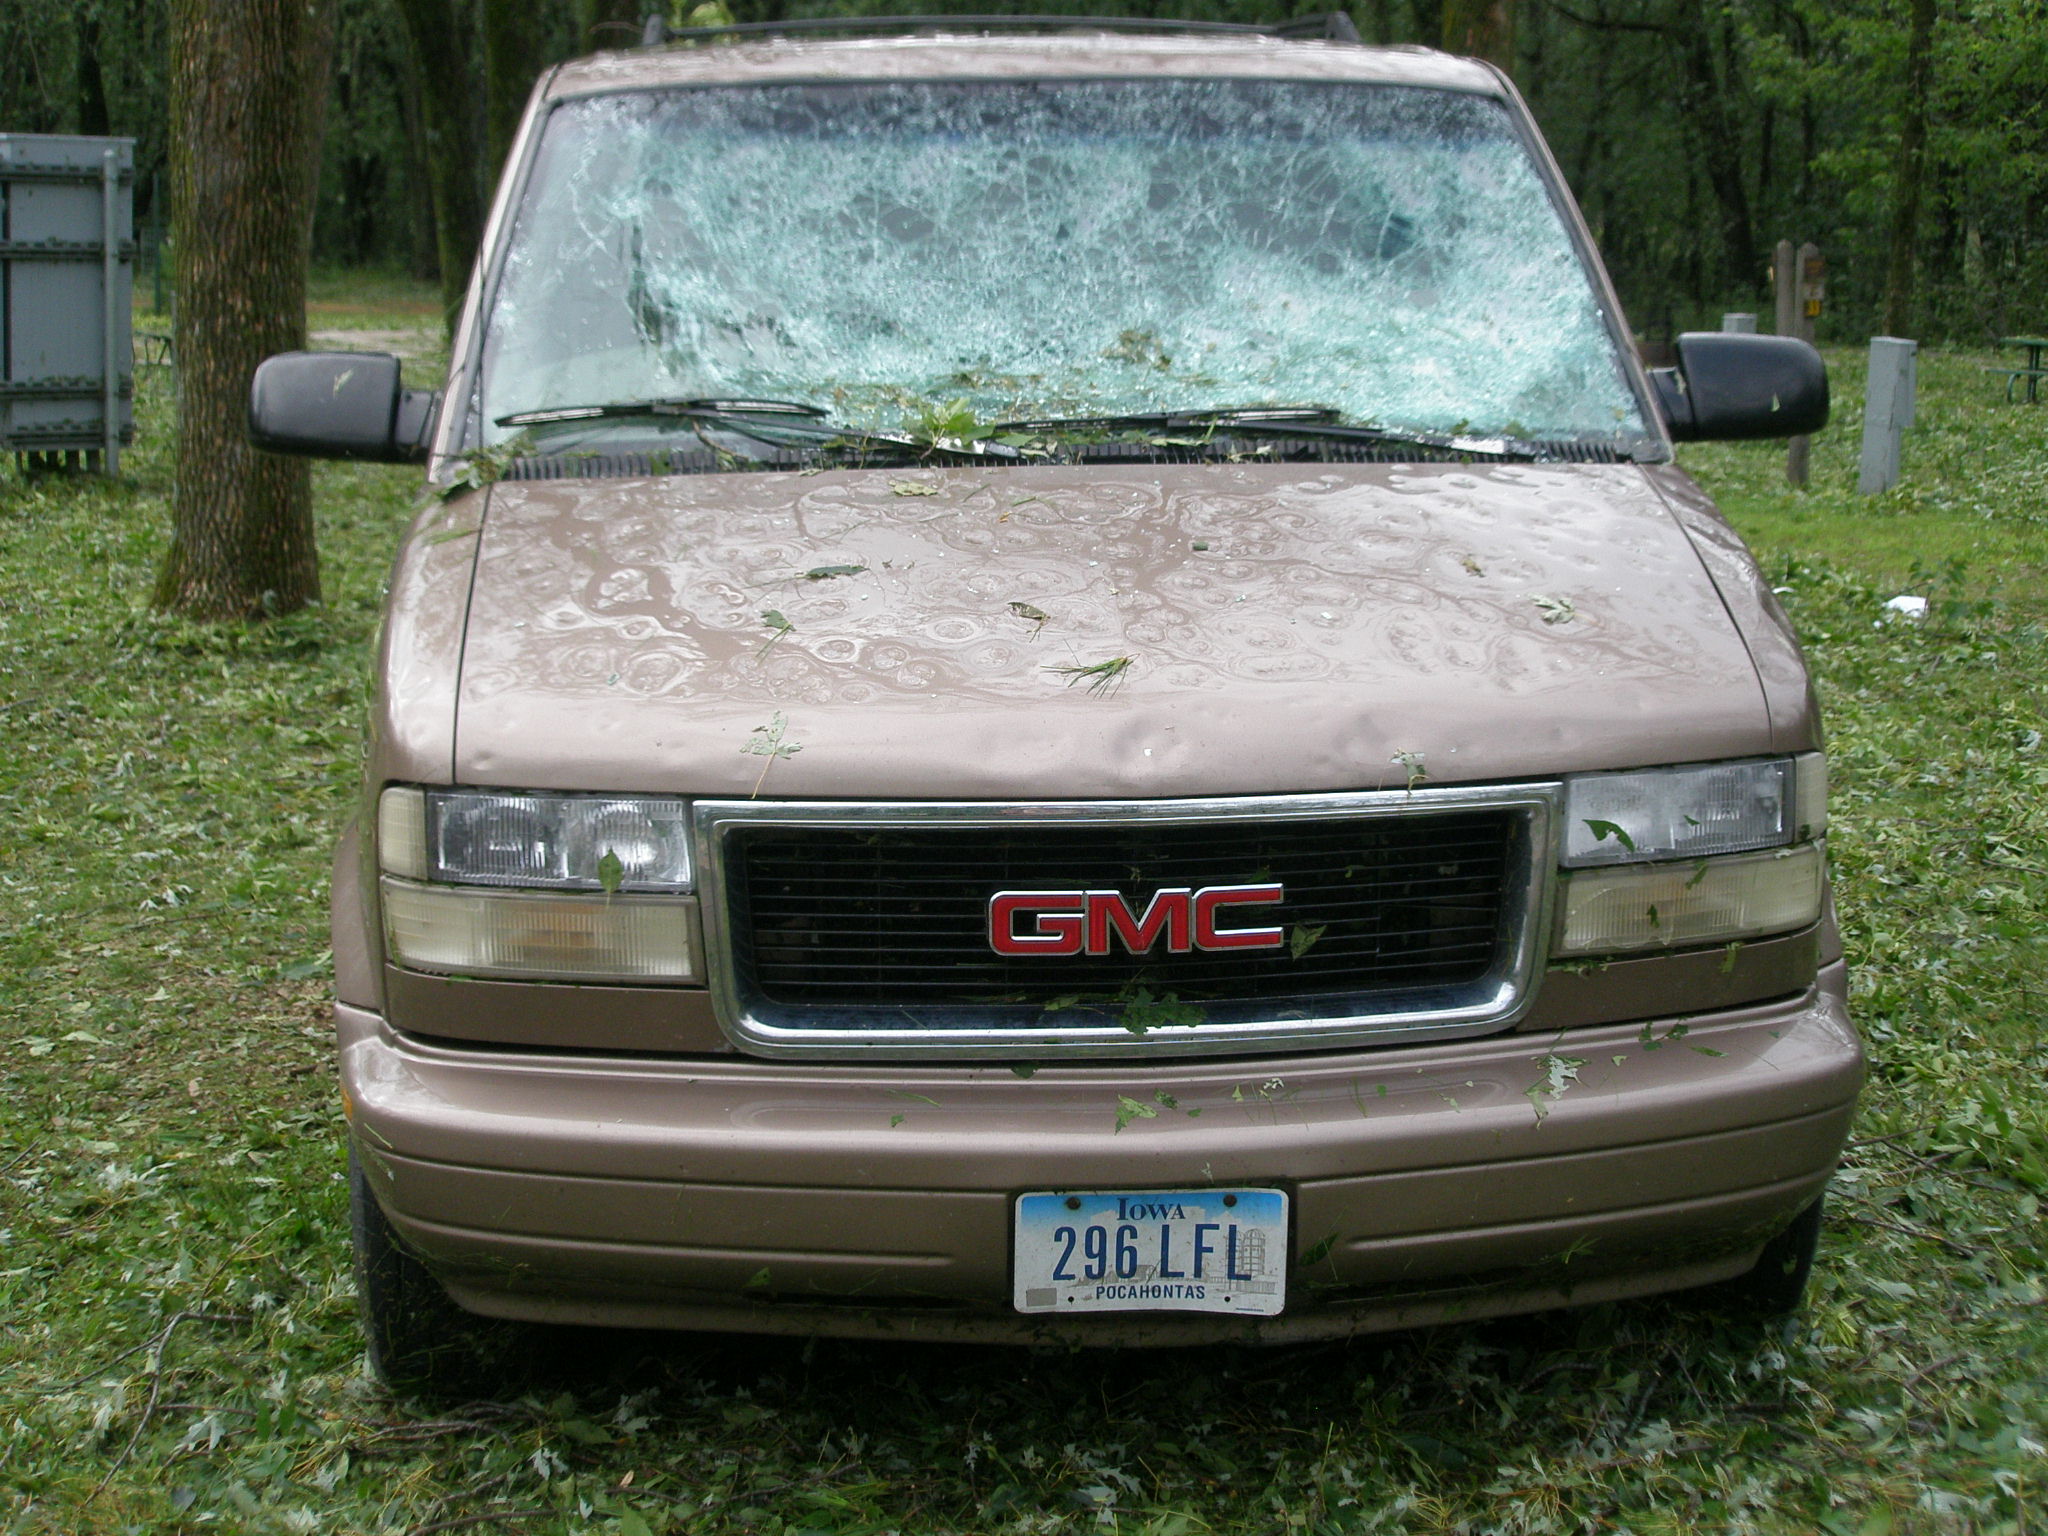 Pine Lake State Park hail damage to vehicle.